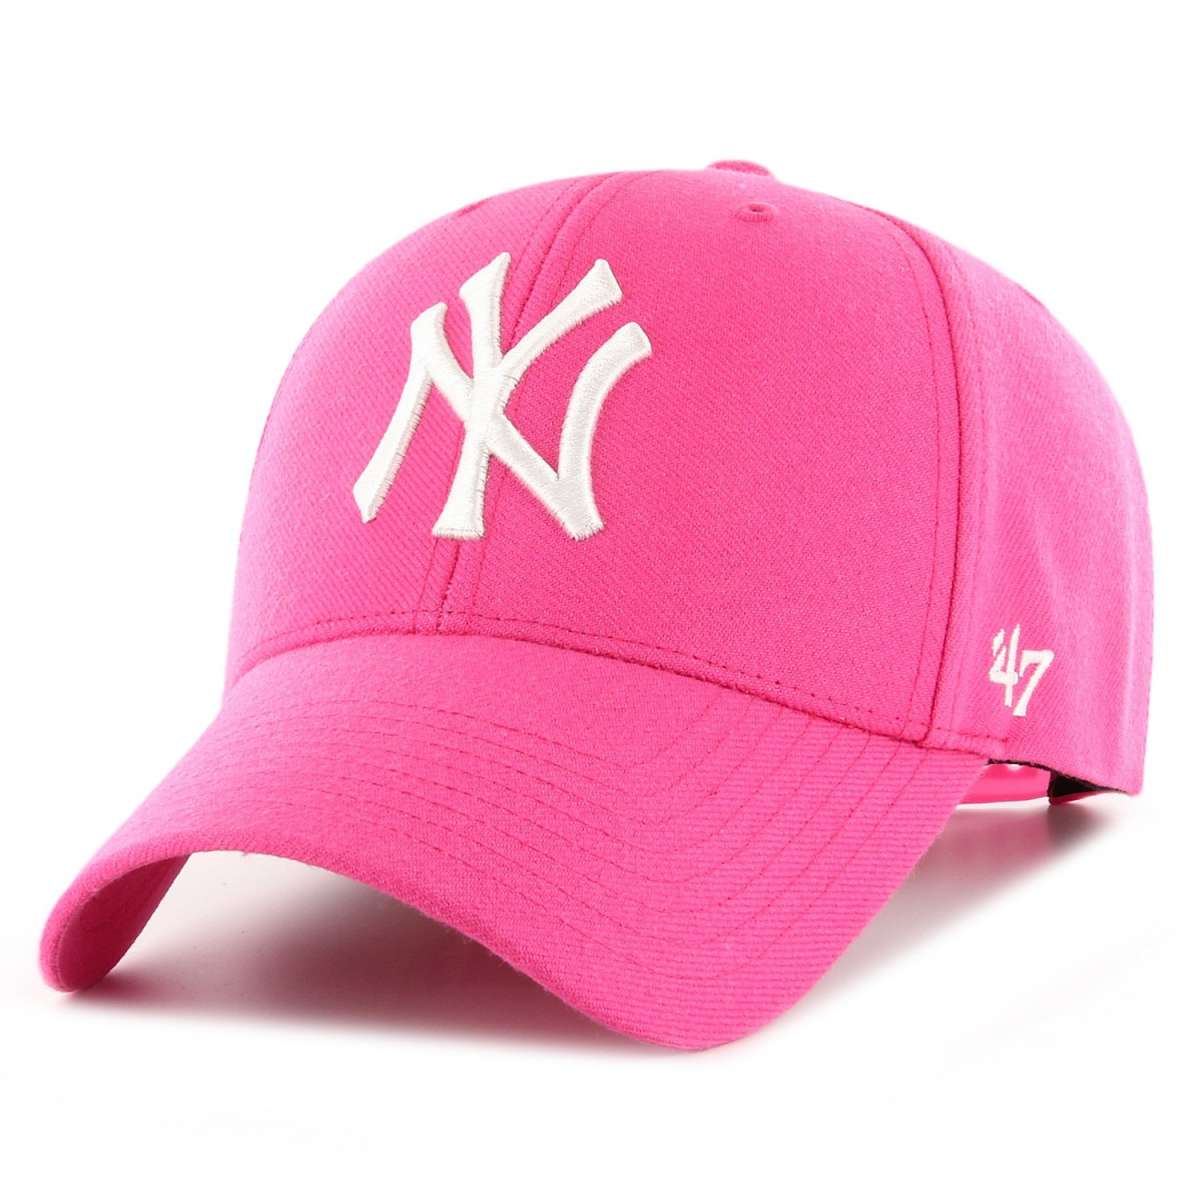 NY Yankees rosa magenta logo blanco 47' MVP snapback visera curva